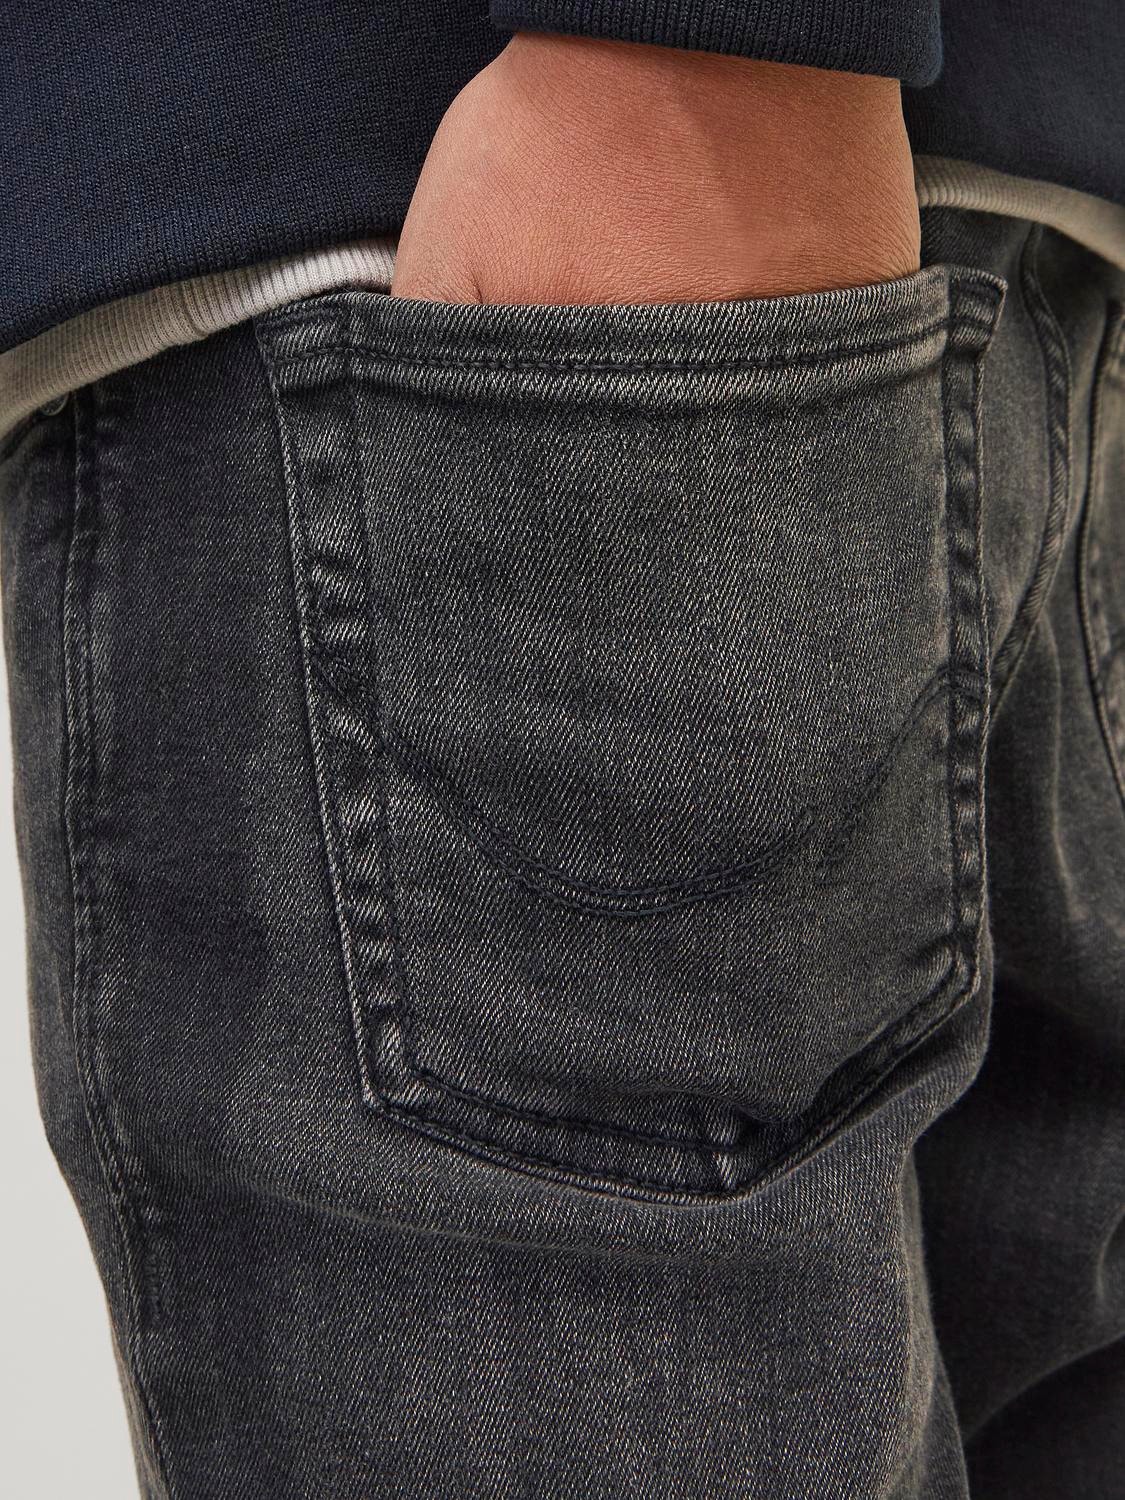 Jack & Jones JJILIAM JJORIGINAL AM 830 Skinny Fit jeans For gutter -Black Denim - 12149936